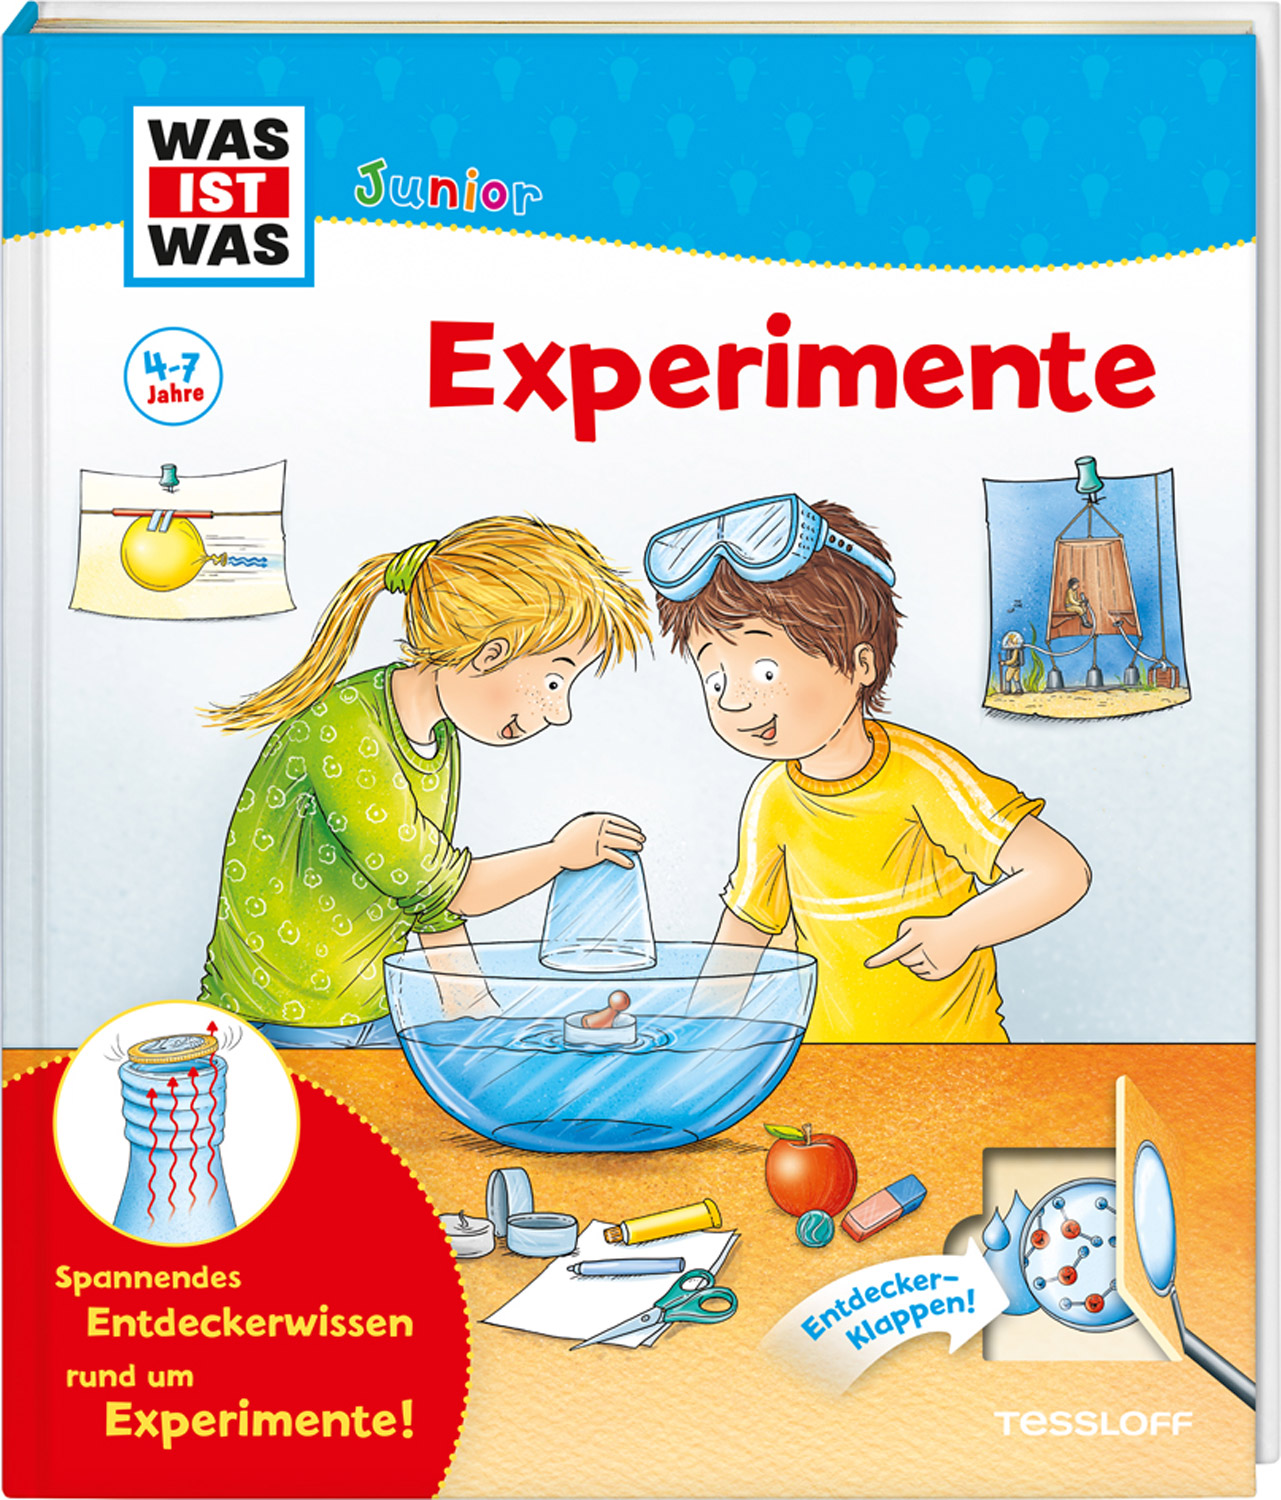 WAS IST WAS Junior: Experimente